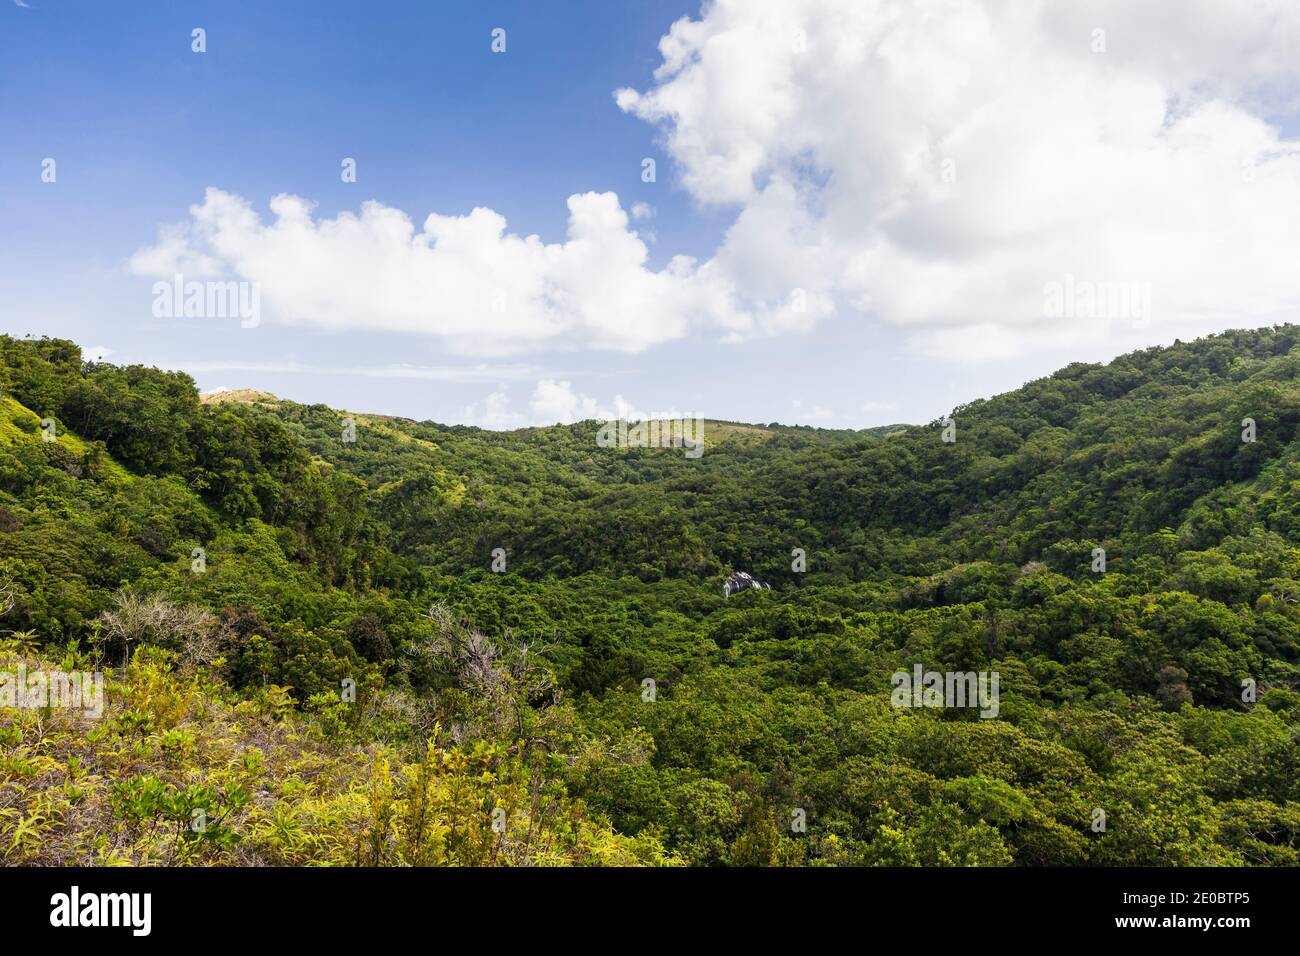 Vista a distanza della cascata di Ngardmau e profondo jngule della montagna foresta pluviale, Ngardmau, Isola di Babeldaob, Palau, Micronesia, Oceania Foto Stock